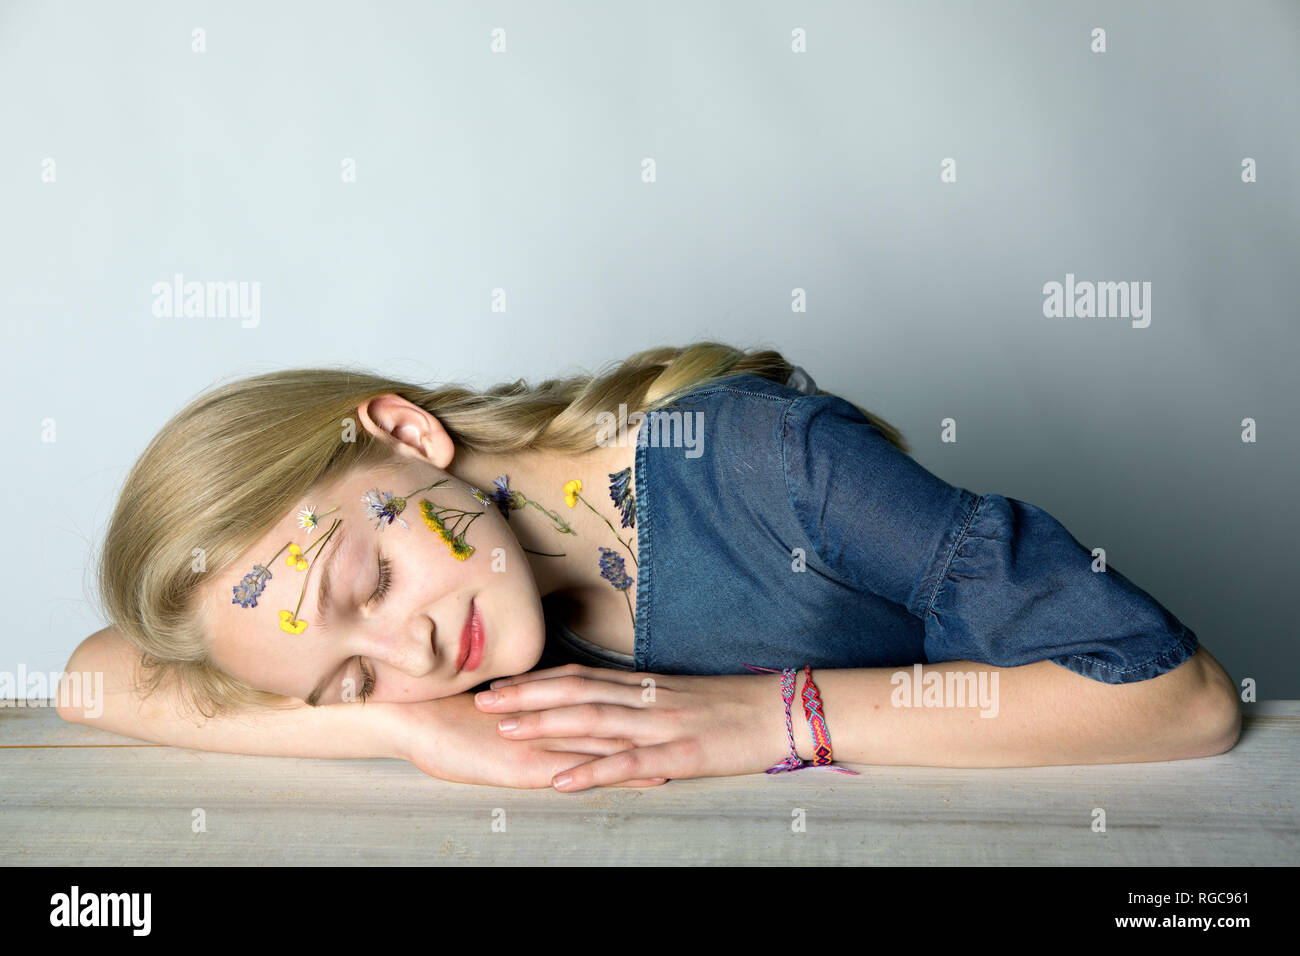 Retrato de chica rubia con tatuaje de flores presionado en su cara Foto de stock